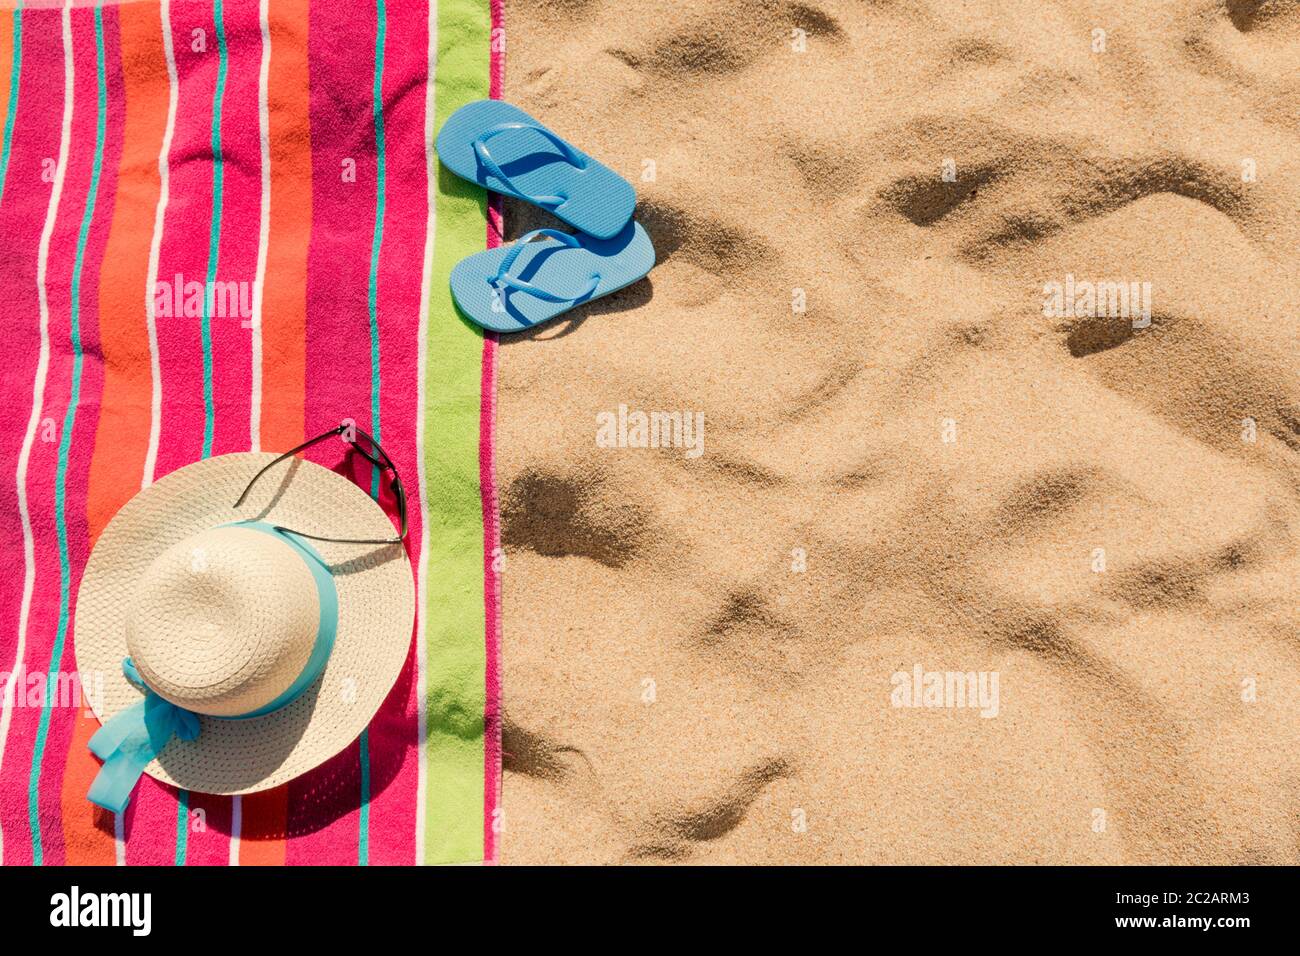 Toalla de playa con sombrero, gafas de sol y chanclas en la arena Foto de stock